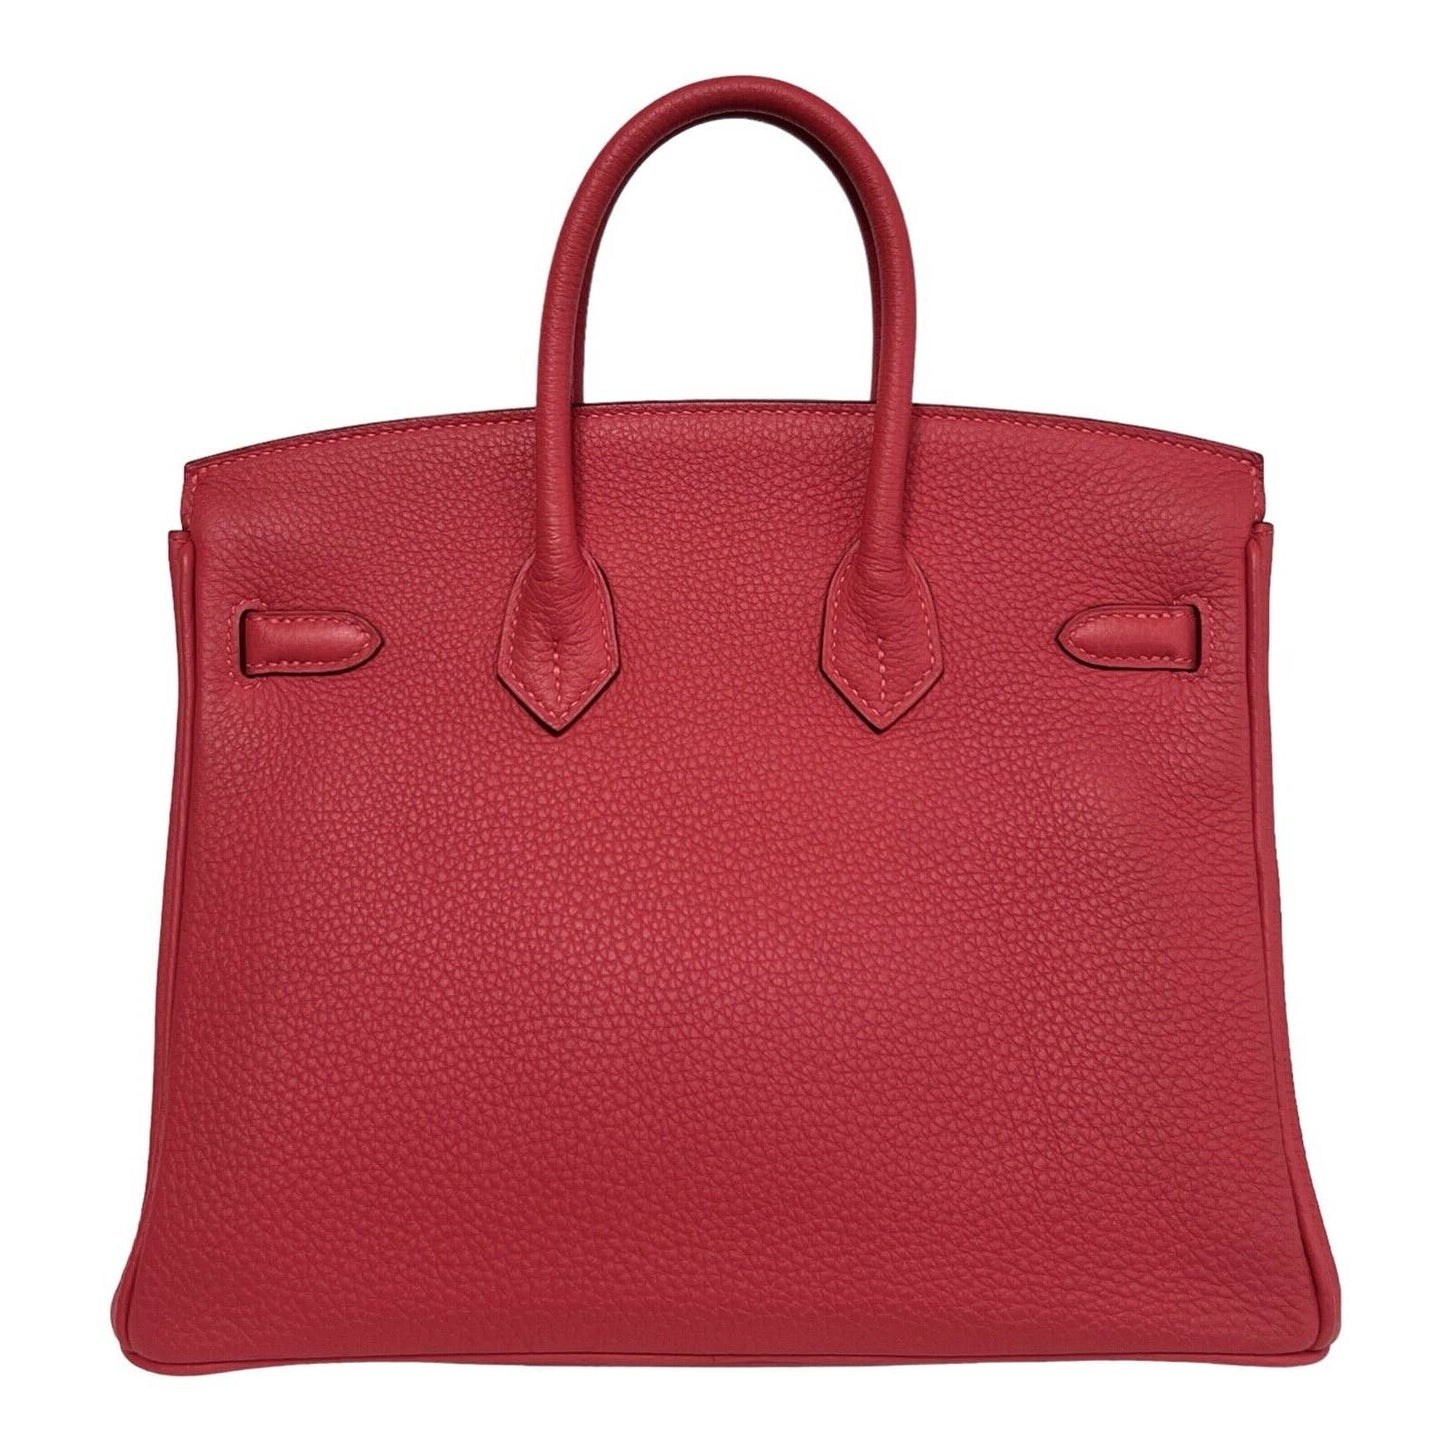 Hermes Birkin 25 Bougainvillea Red Pink Togo Leather Gold Hardware Handbag Bag